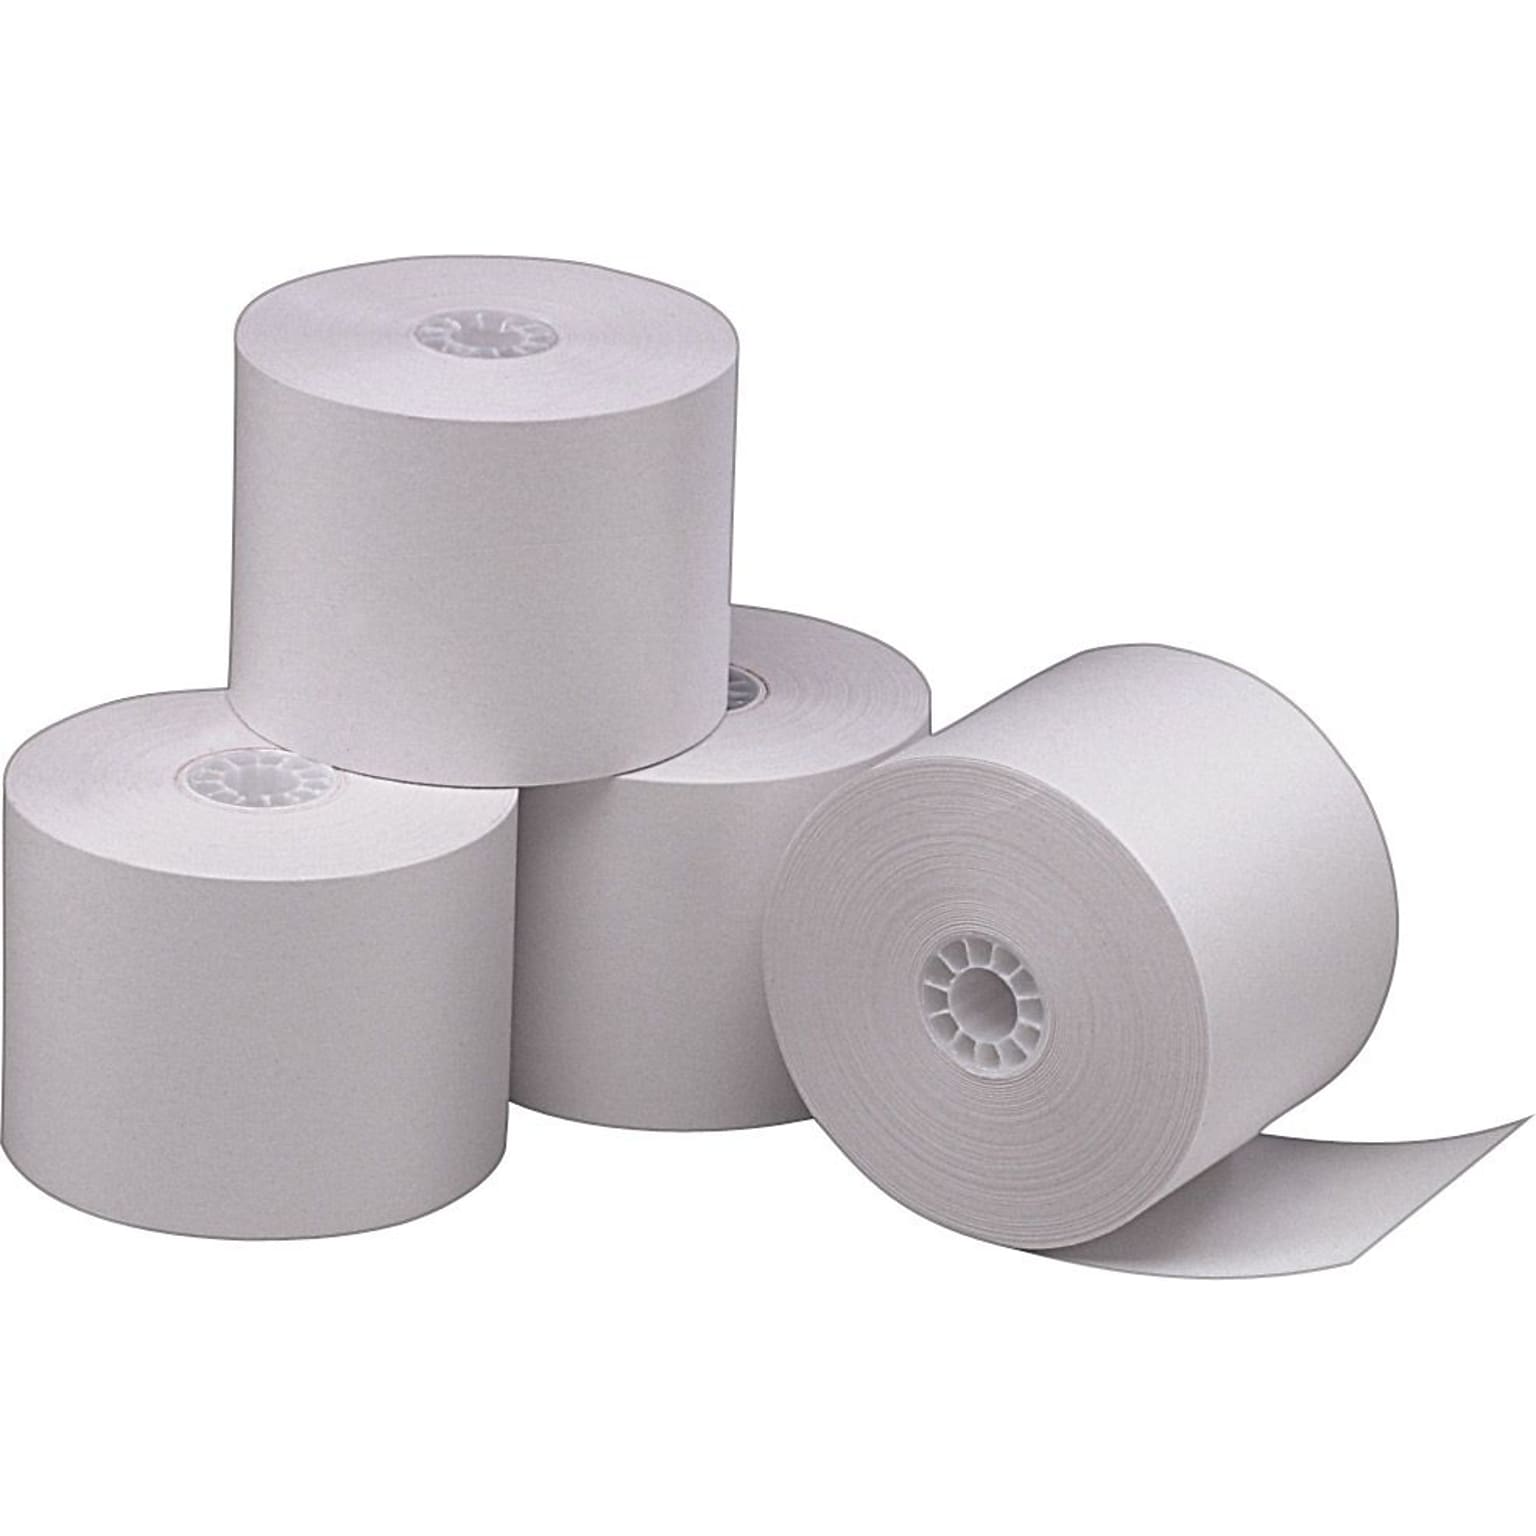 Paper Manufacturers Bond Adding Machines & Calculator Paper Rolls, 2 1/4 x 165 (7786)